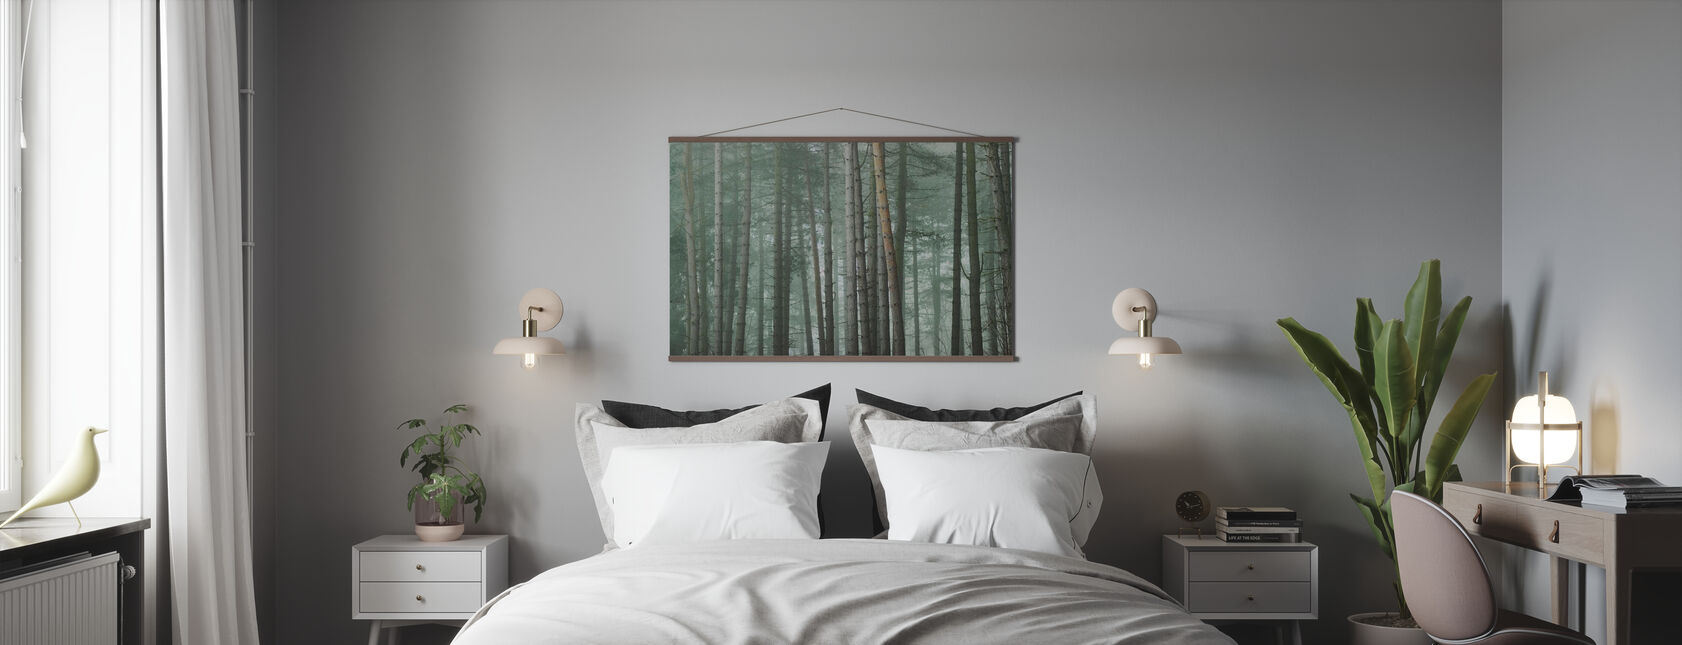 Foresta Nebbiosa - Poster - Camera da letto